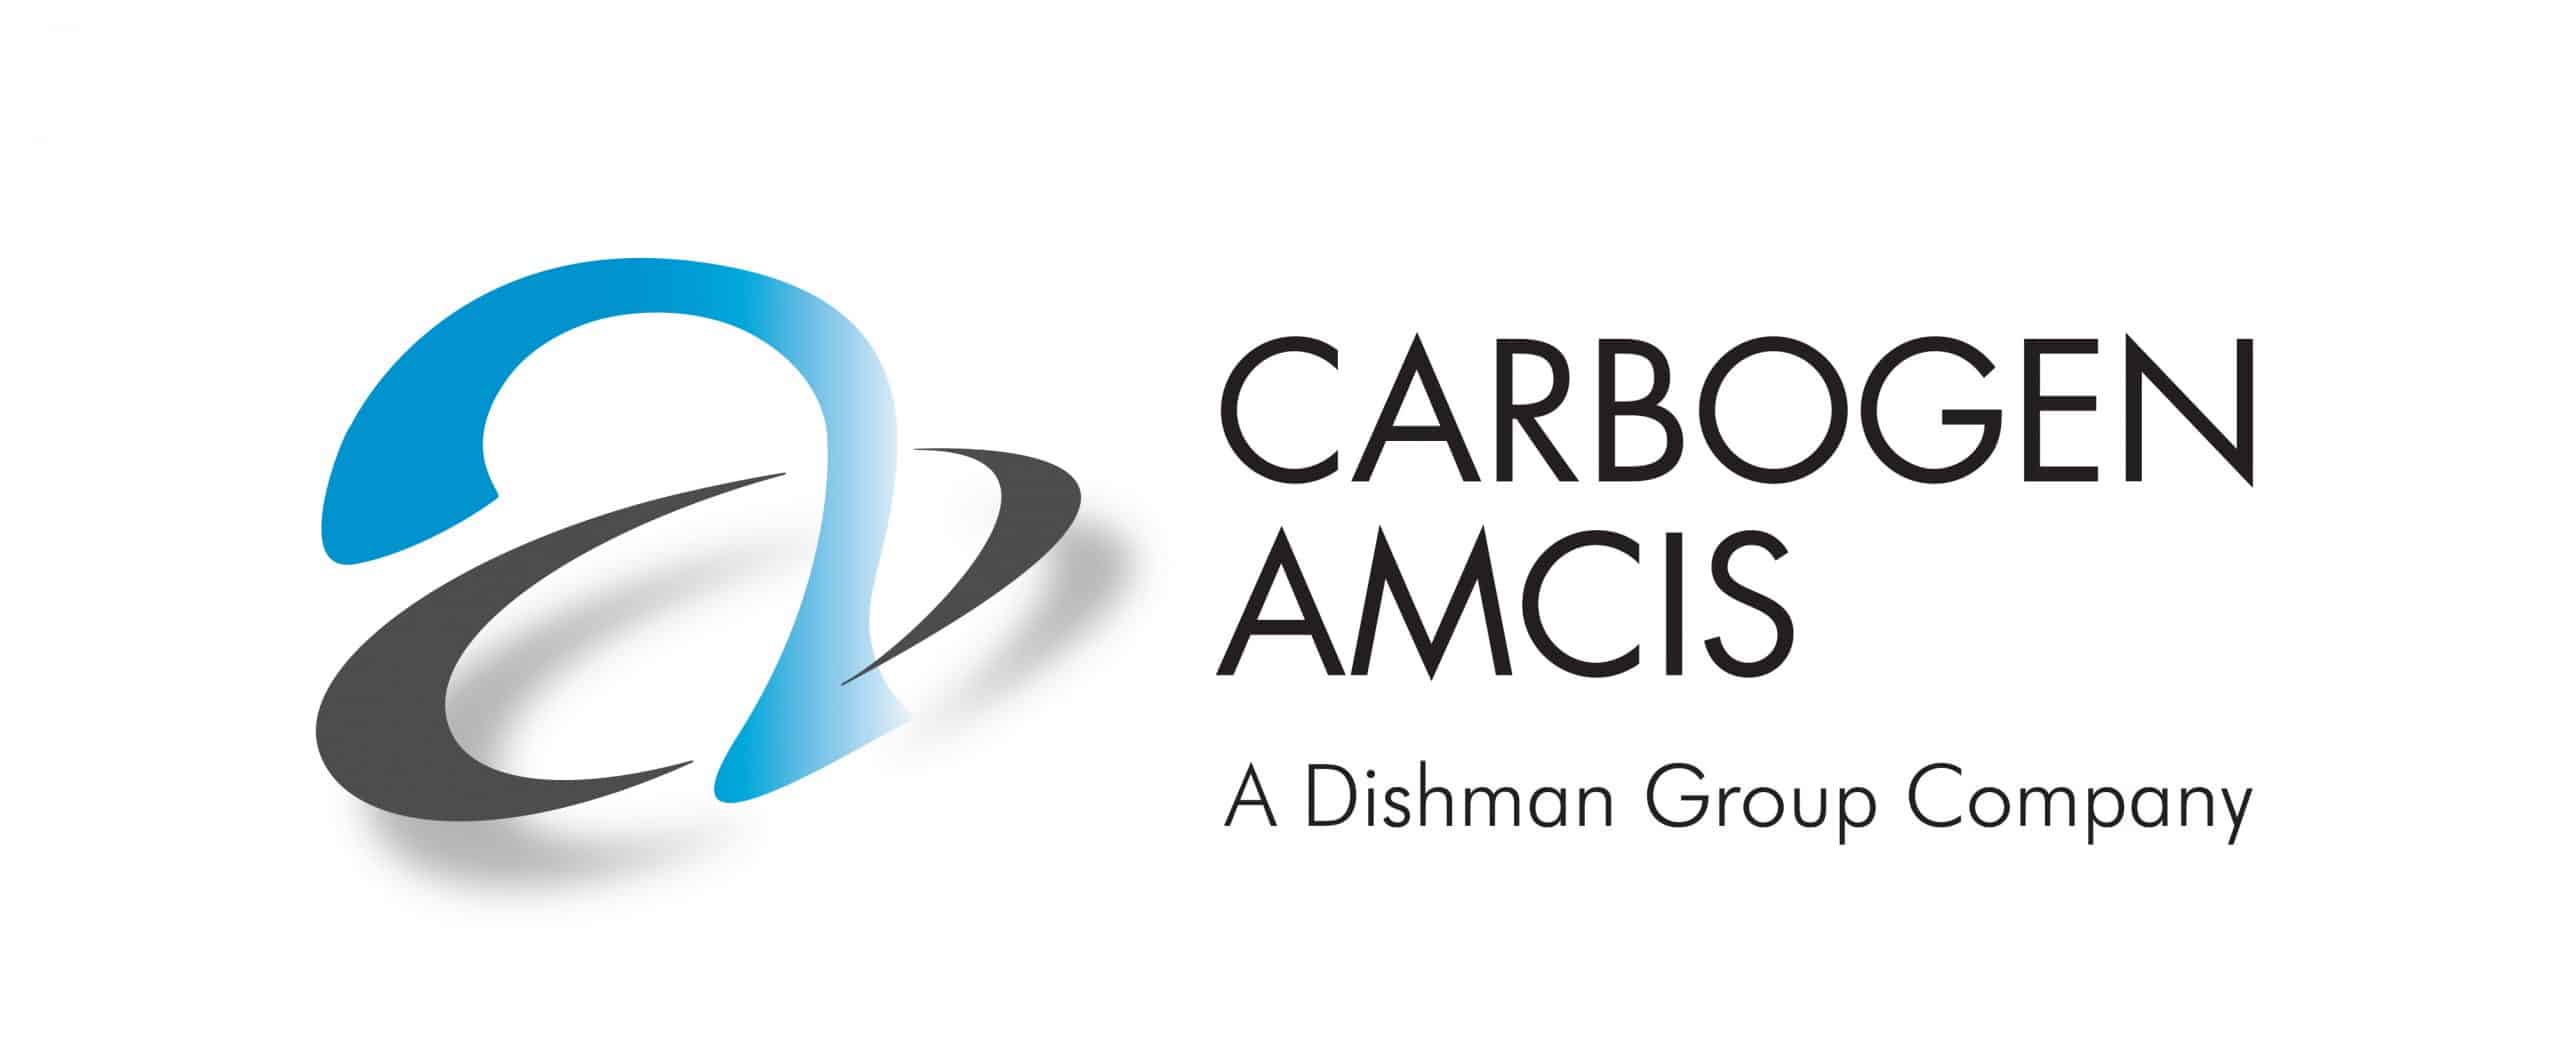 Logo Carbogen amcis